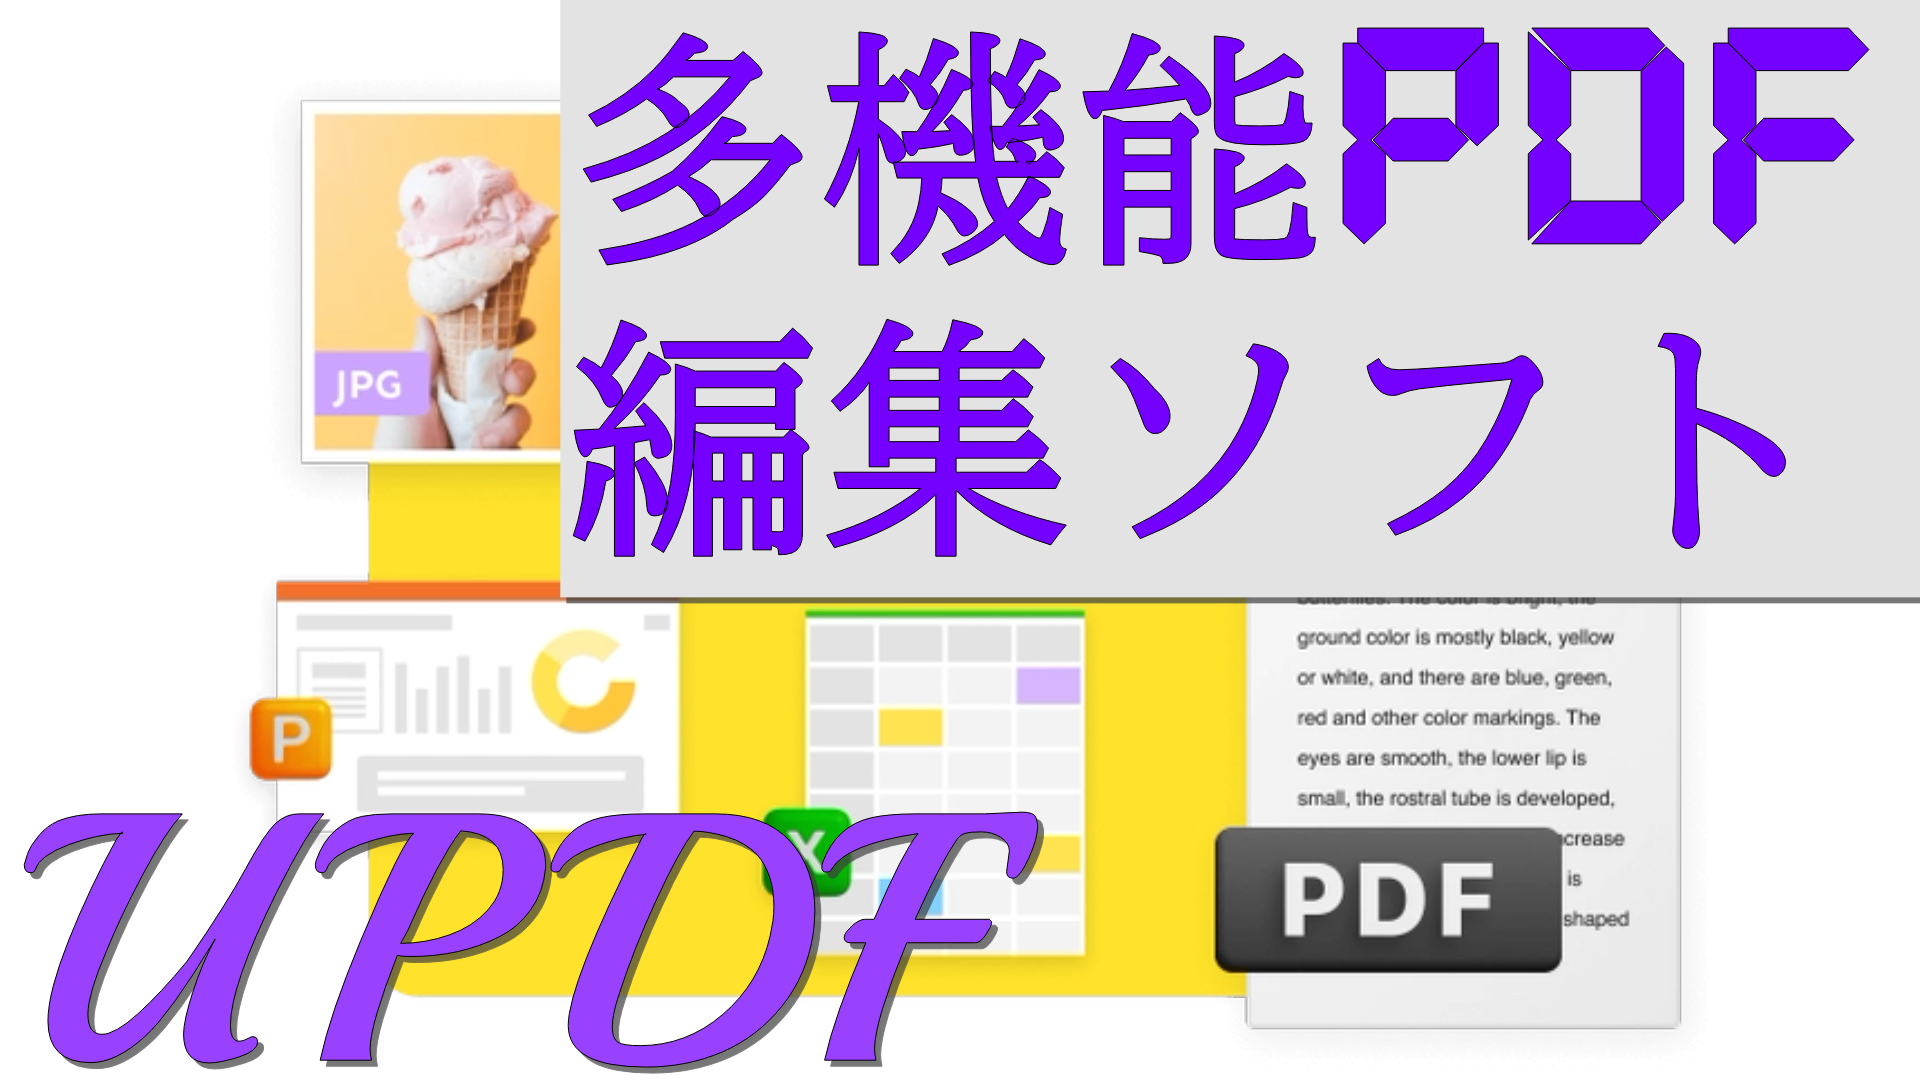 dorublog | 多機能PDF編集ソフト「UPDF」評価 使い方やダウンロード方法